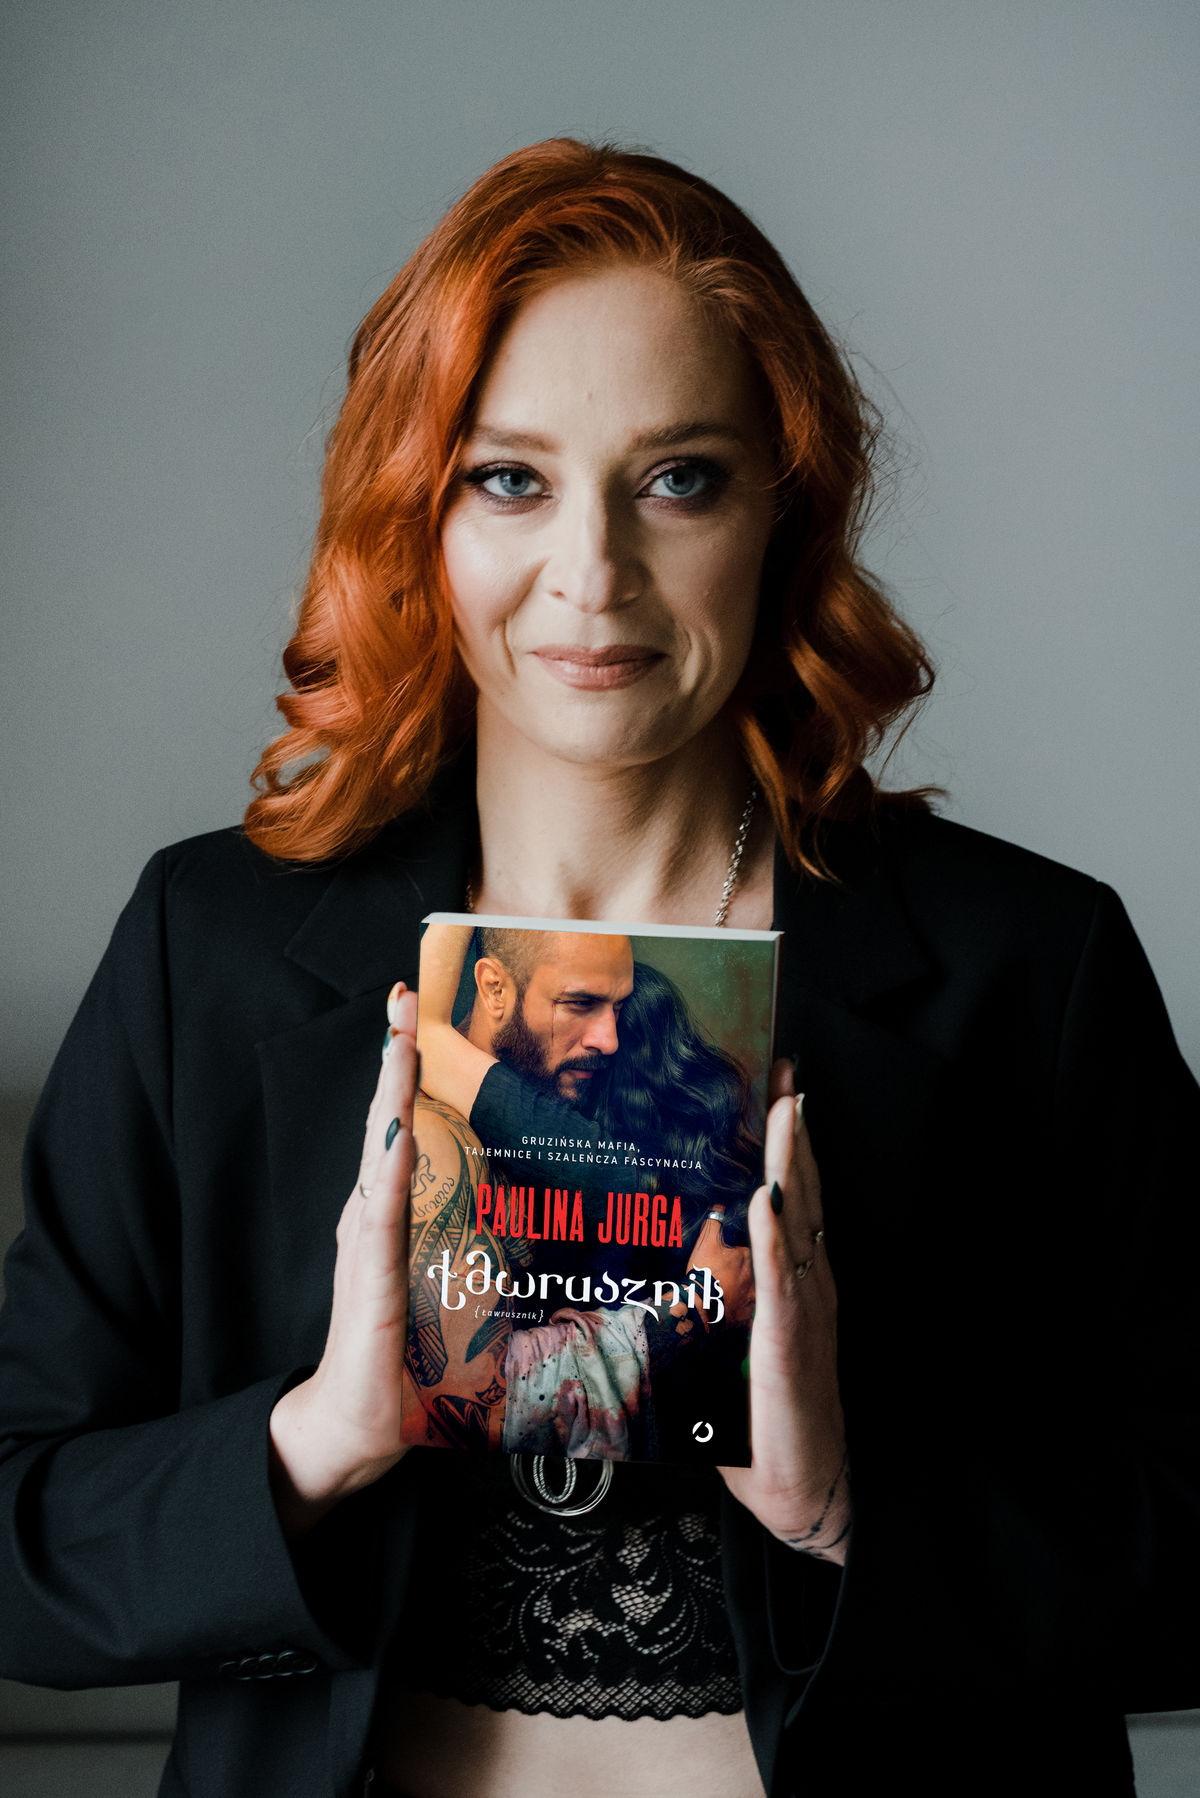 Paulina Jurga, autorka m.in. wydanej właśnie powieści „Ławrusznik”.